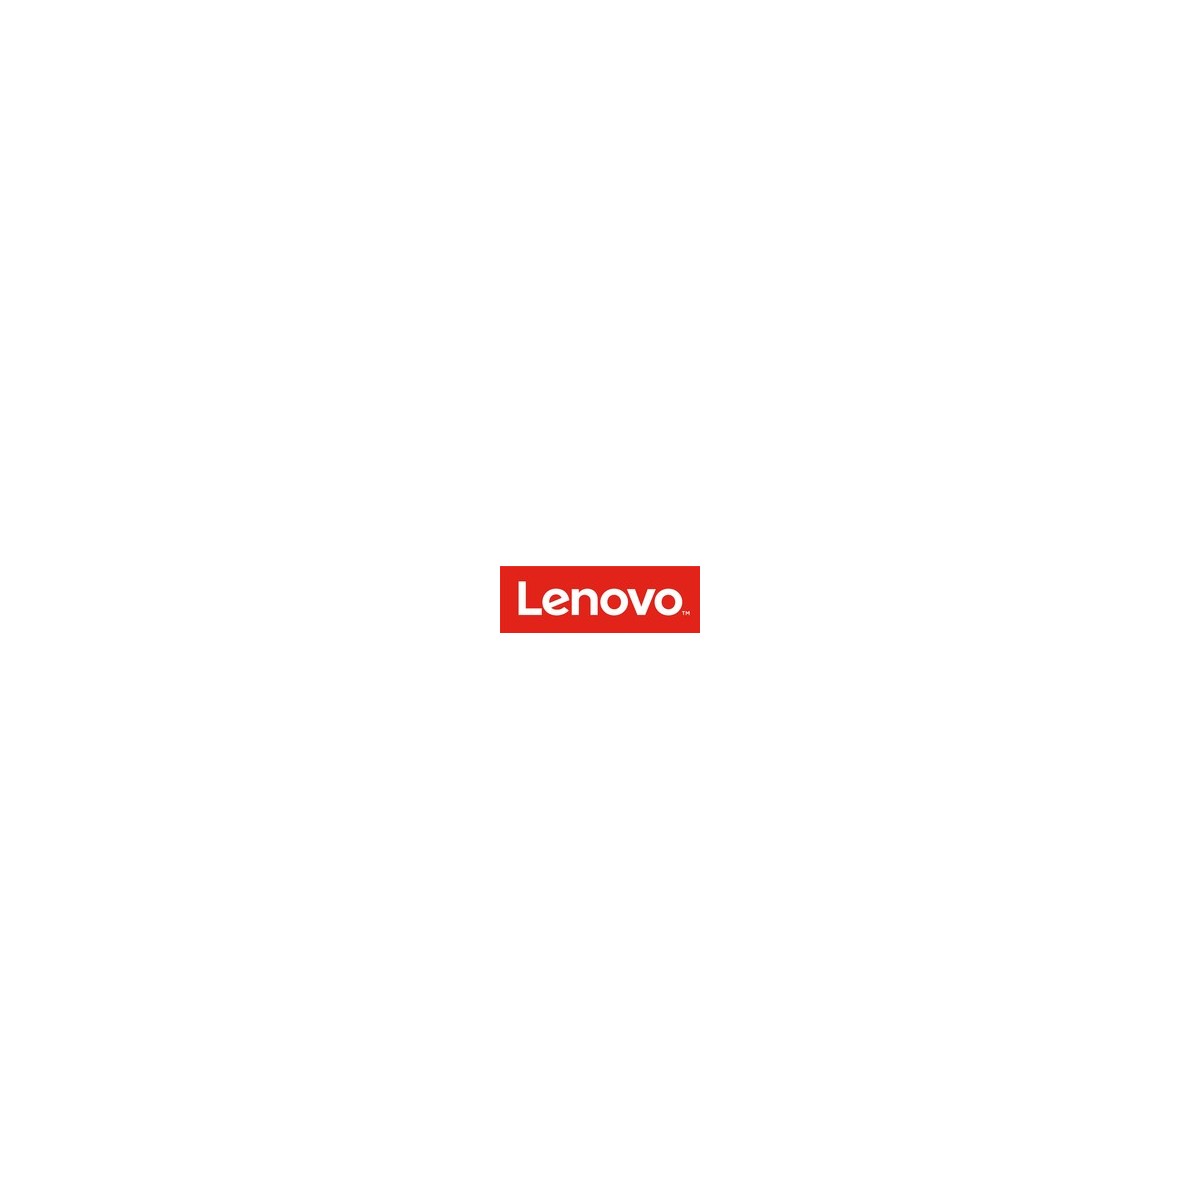 Lenovo 7S050084WW - Lizenz - Betriebssystem - Nur Lizenz Vollversion